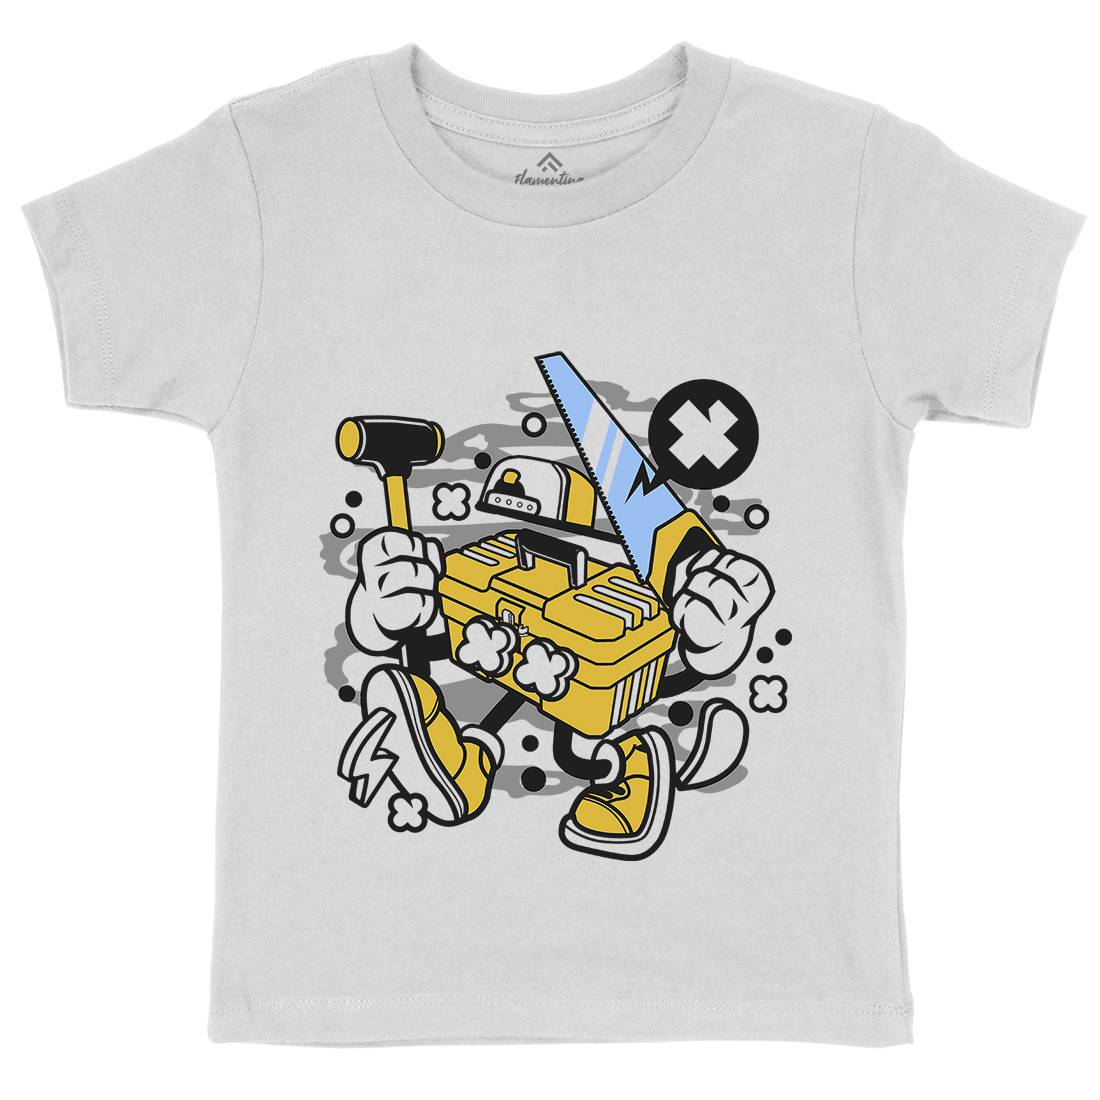 Tool Box Kids Organic Crew Neck T-Shirt Work C282